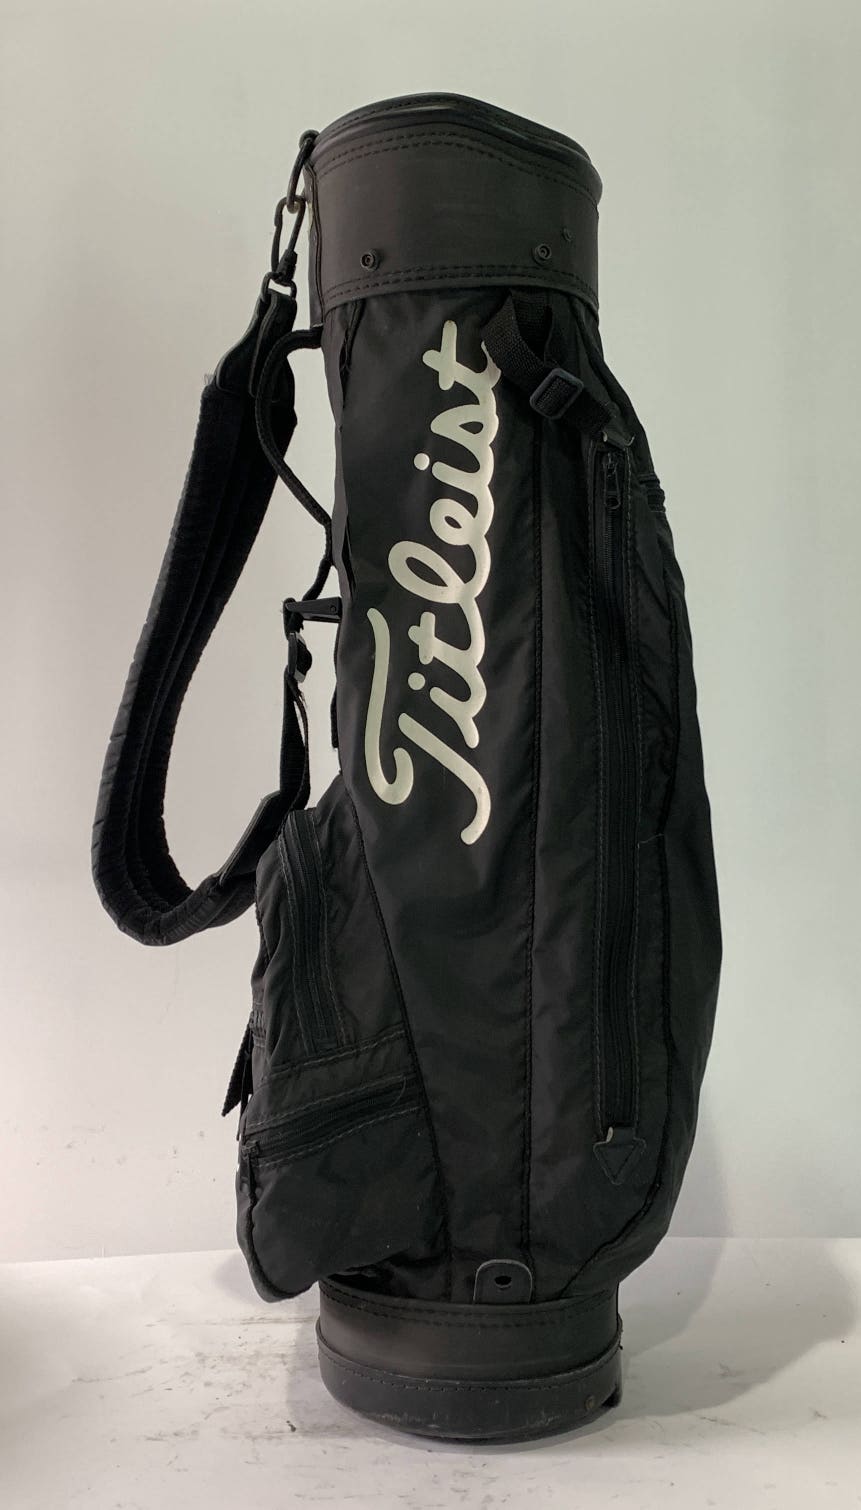 Titleist Vintage Retro Carry Bag Black 3-Way Divide Single Strap Golf Bag